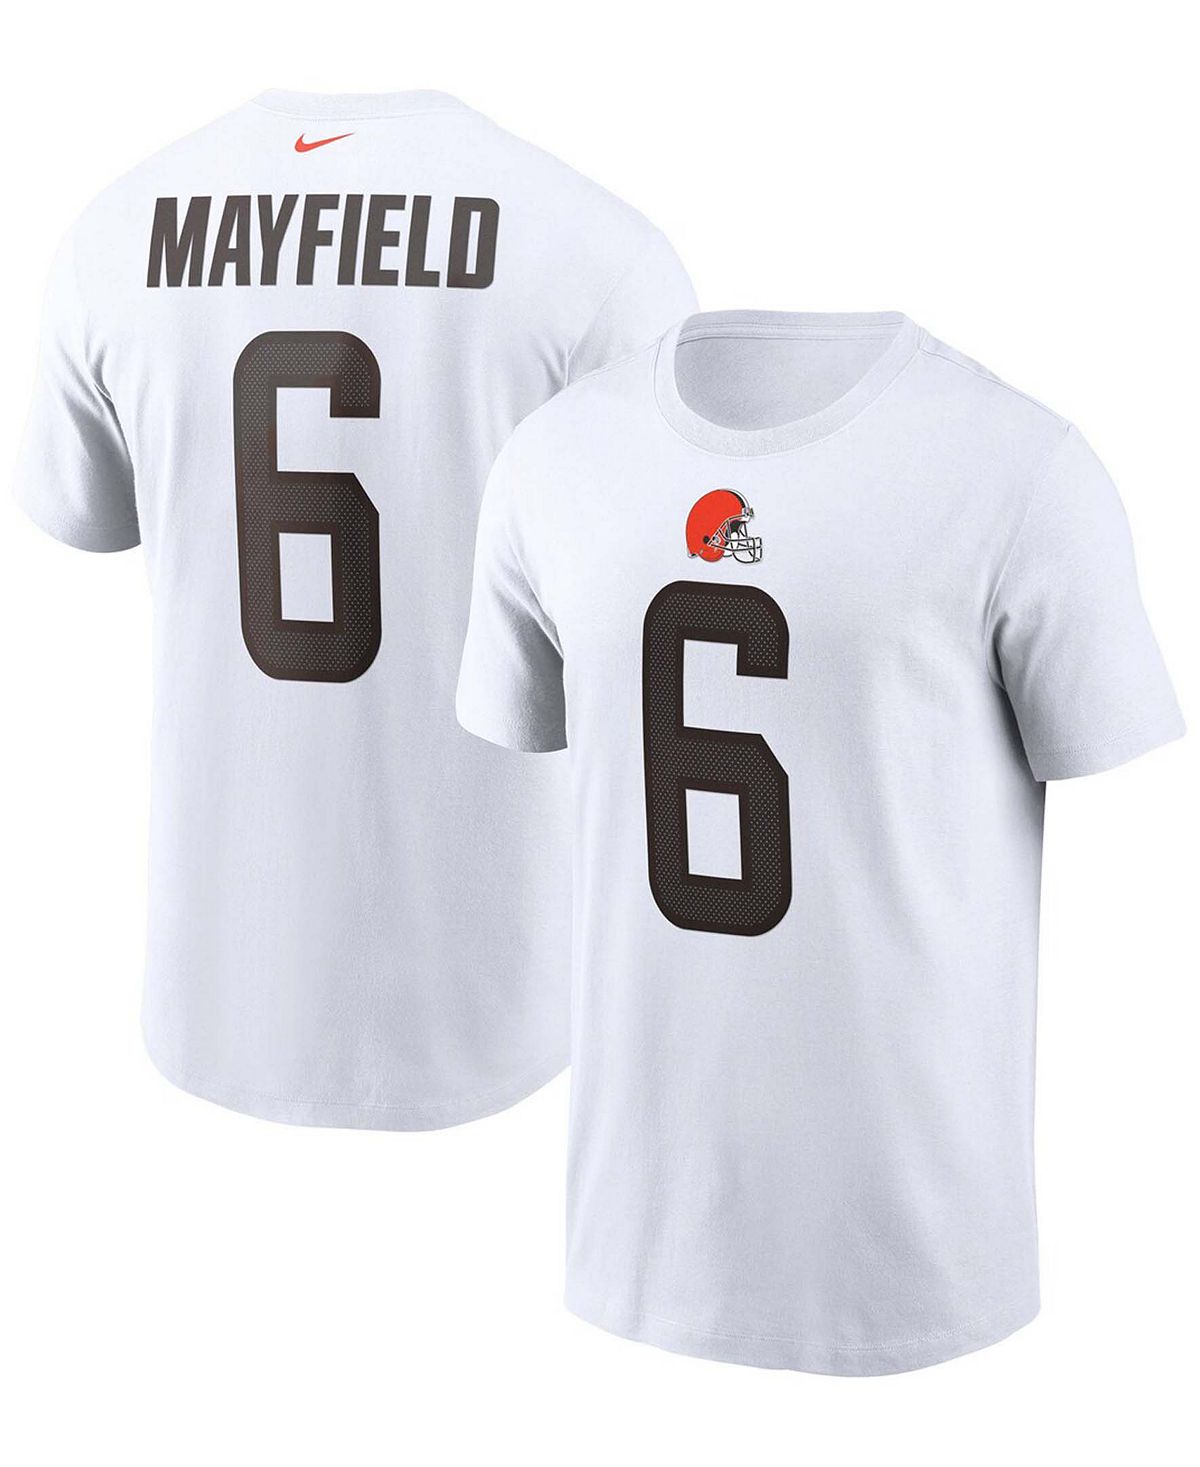 Мужская футболка Baker Mayfield White Cleveland Browns с именем и номером Nike торт бисквитный фили бейкер любимый ключик 1 кг